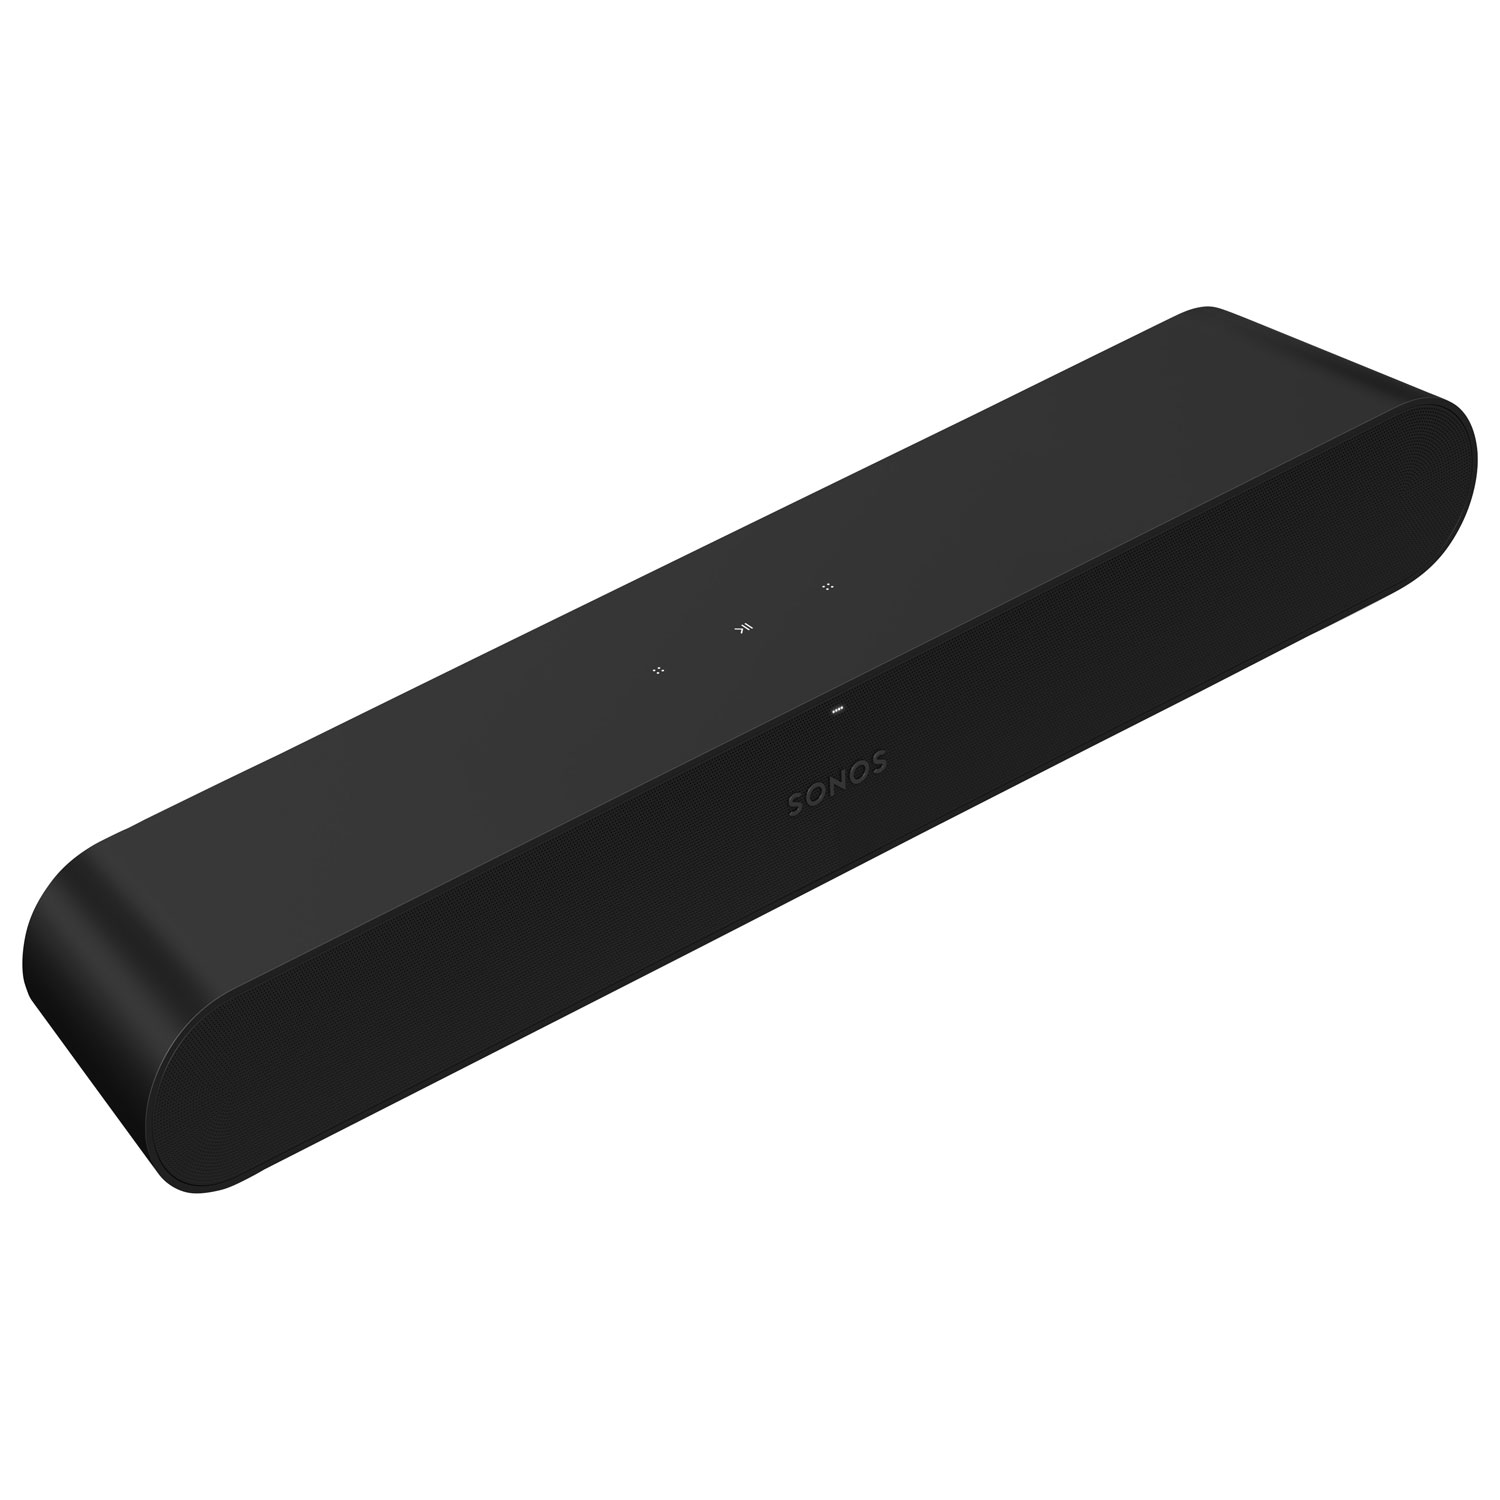 Sonos Ray Sound Bar - Black | Best Buy Canada